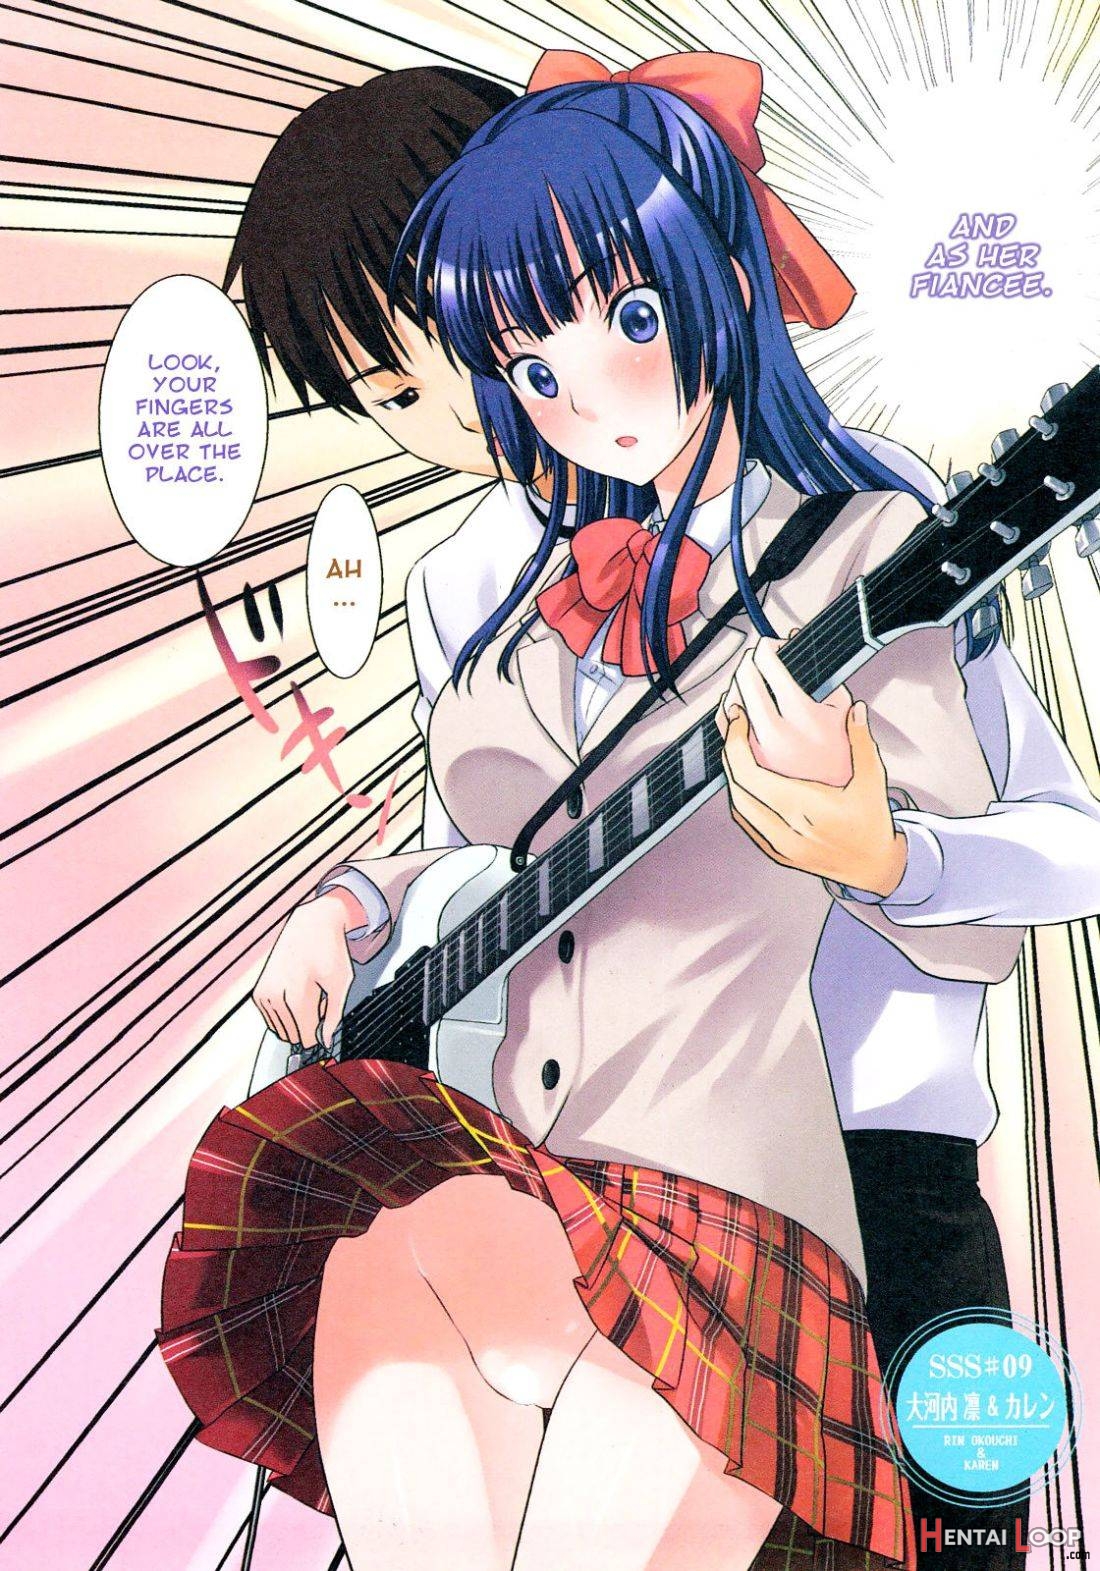 Sss #09 Okouchi Rin & Karen page 2